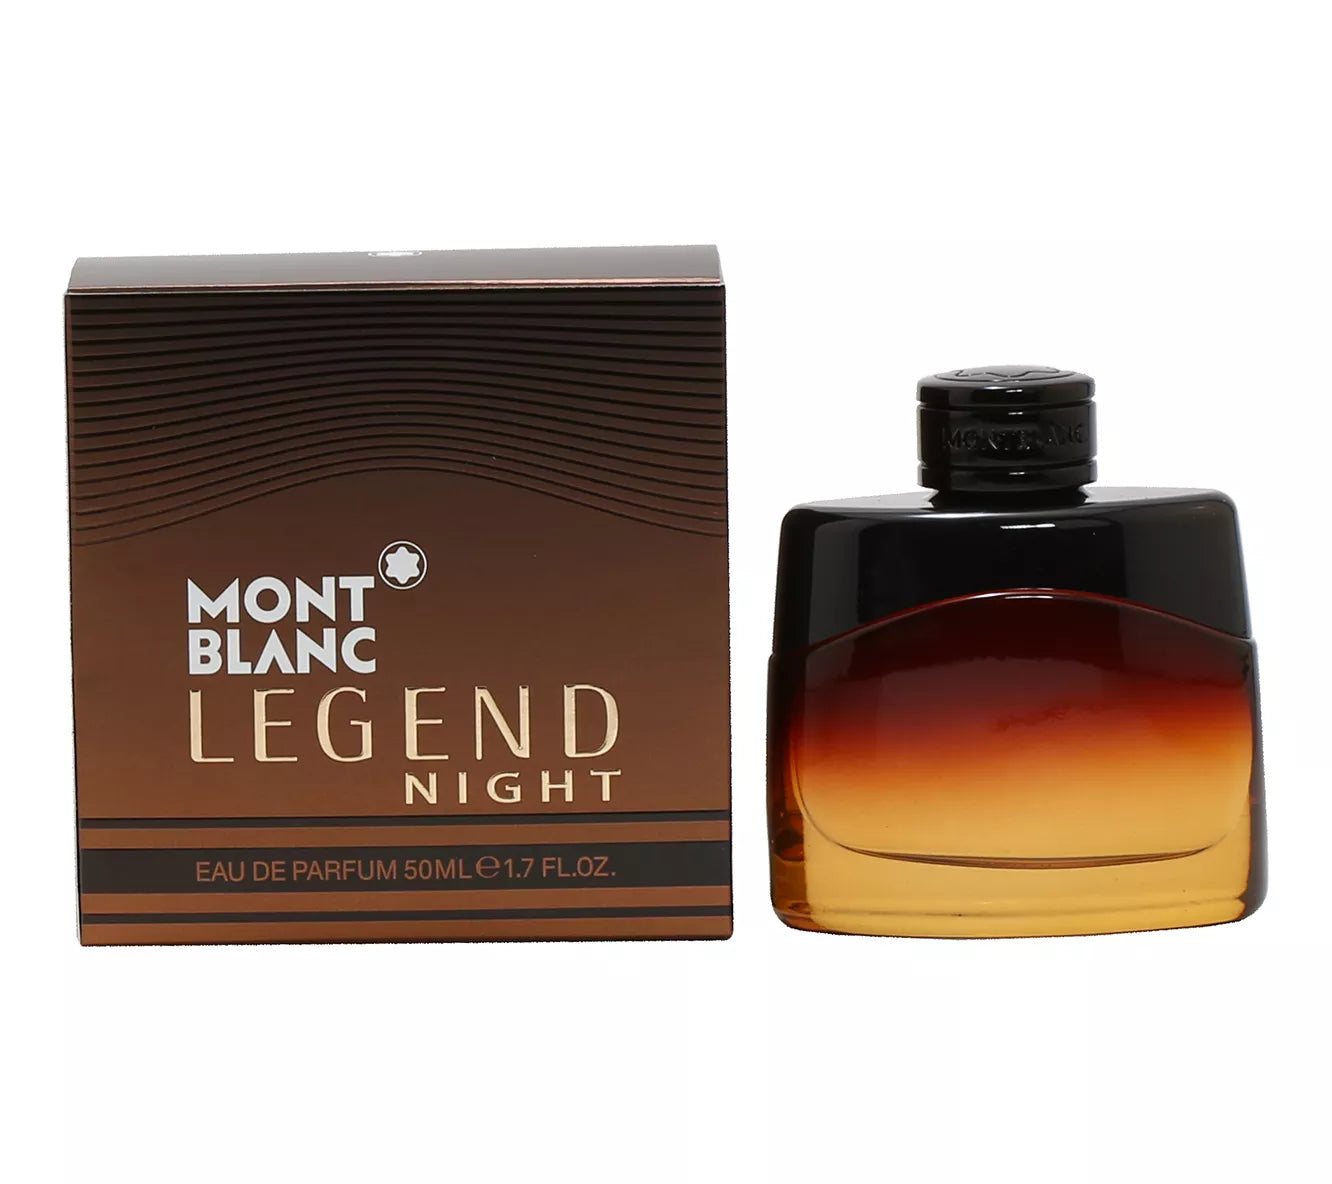 Montblanc Legend Spirit 3.4oz Men's Eau de Toilette for sale online